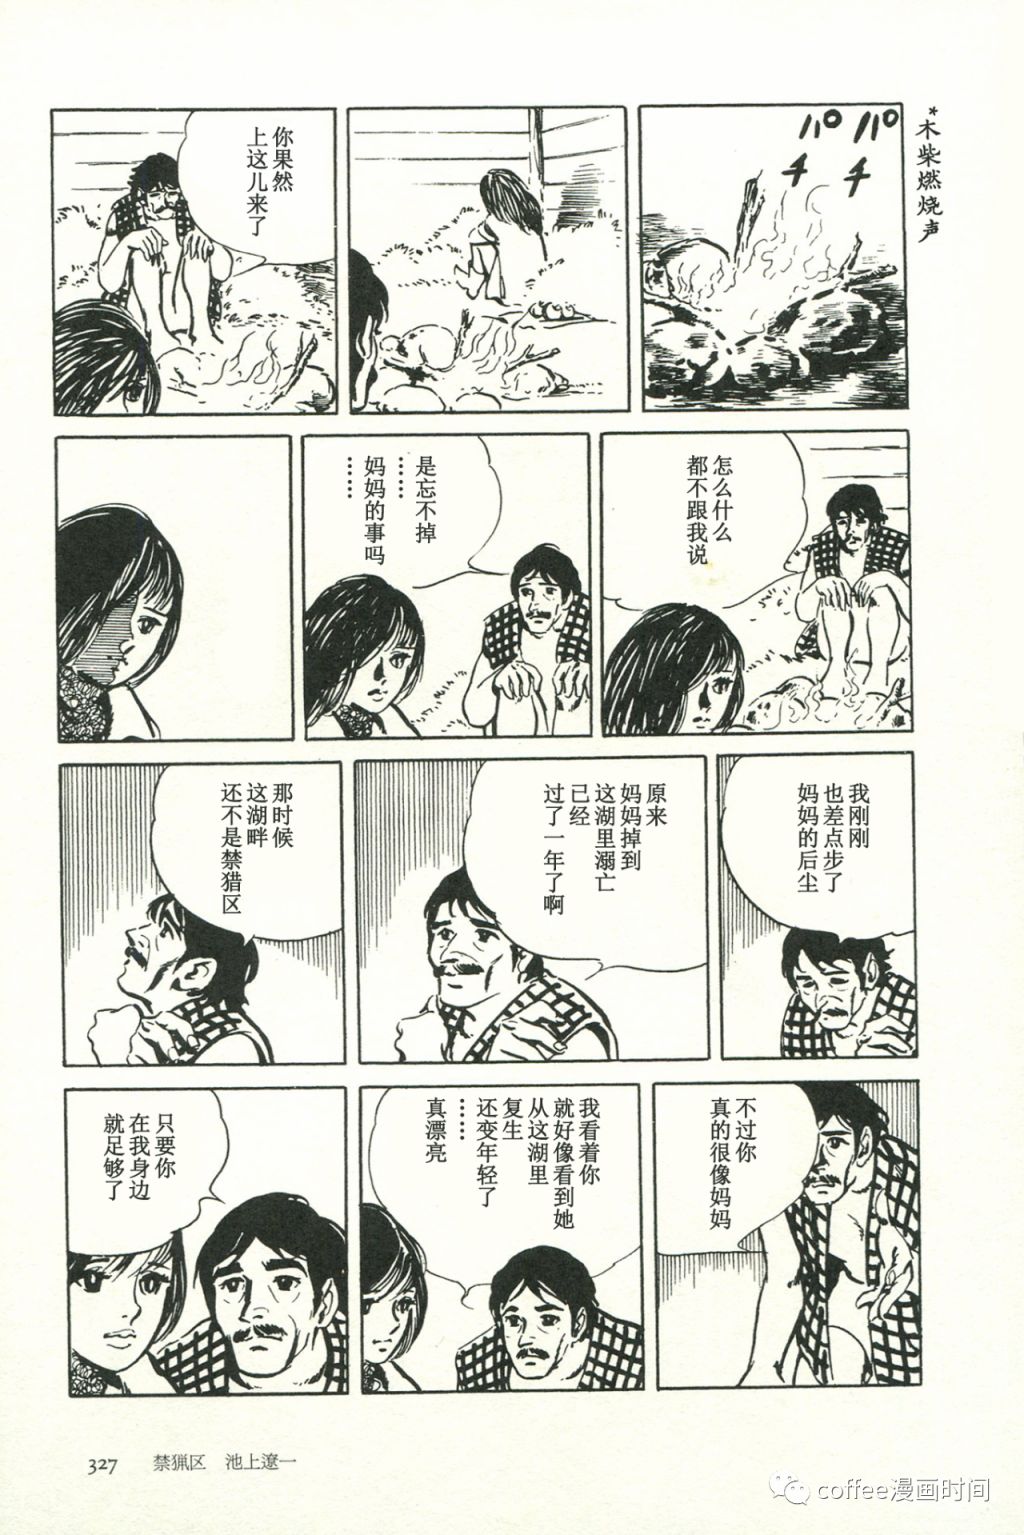 日本短篇漫畫傑作集 - 池上遼一《禁獵區》 - 5